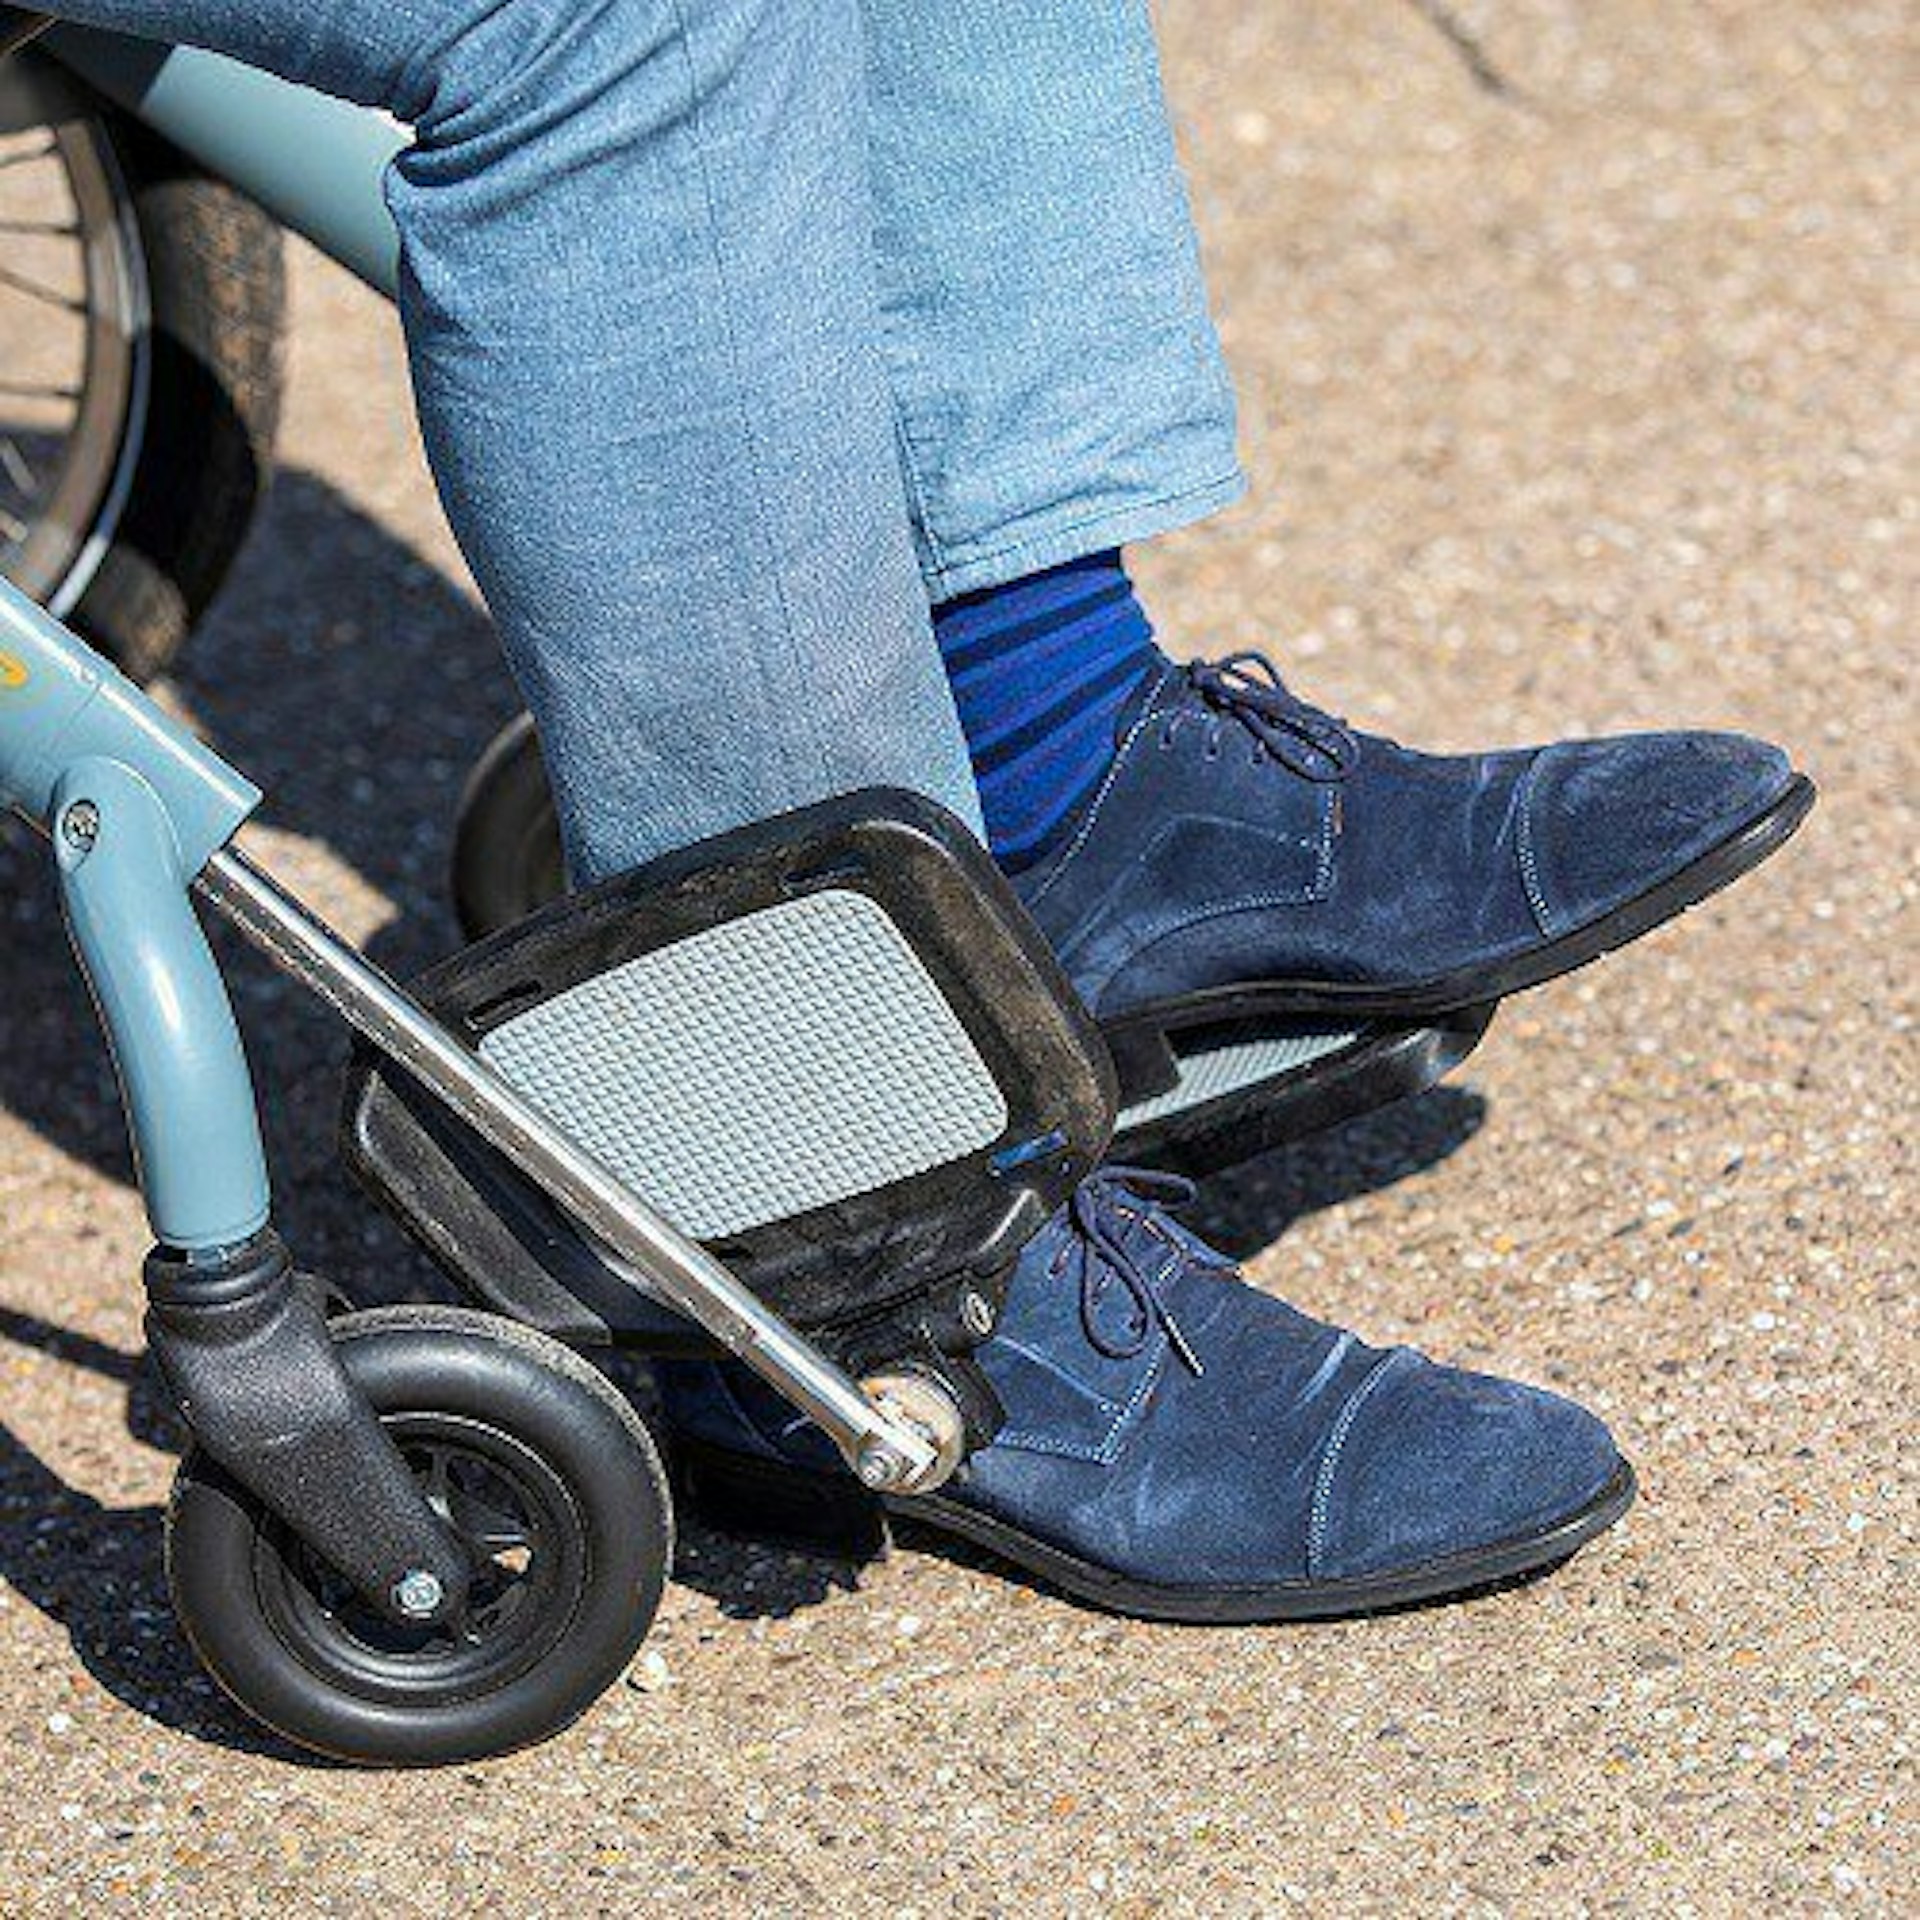 Tricycle wheelchair bike OPair footrest